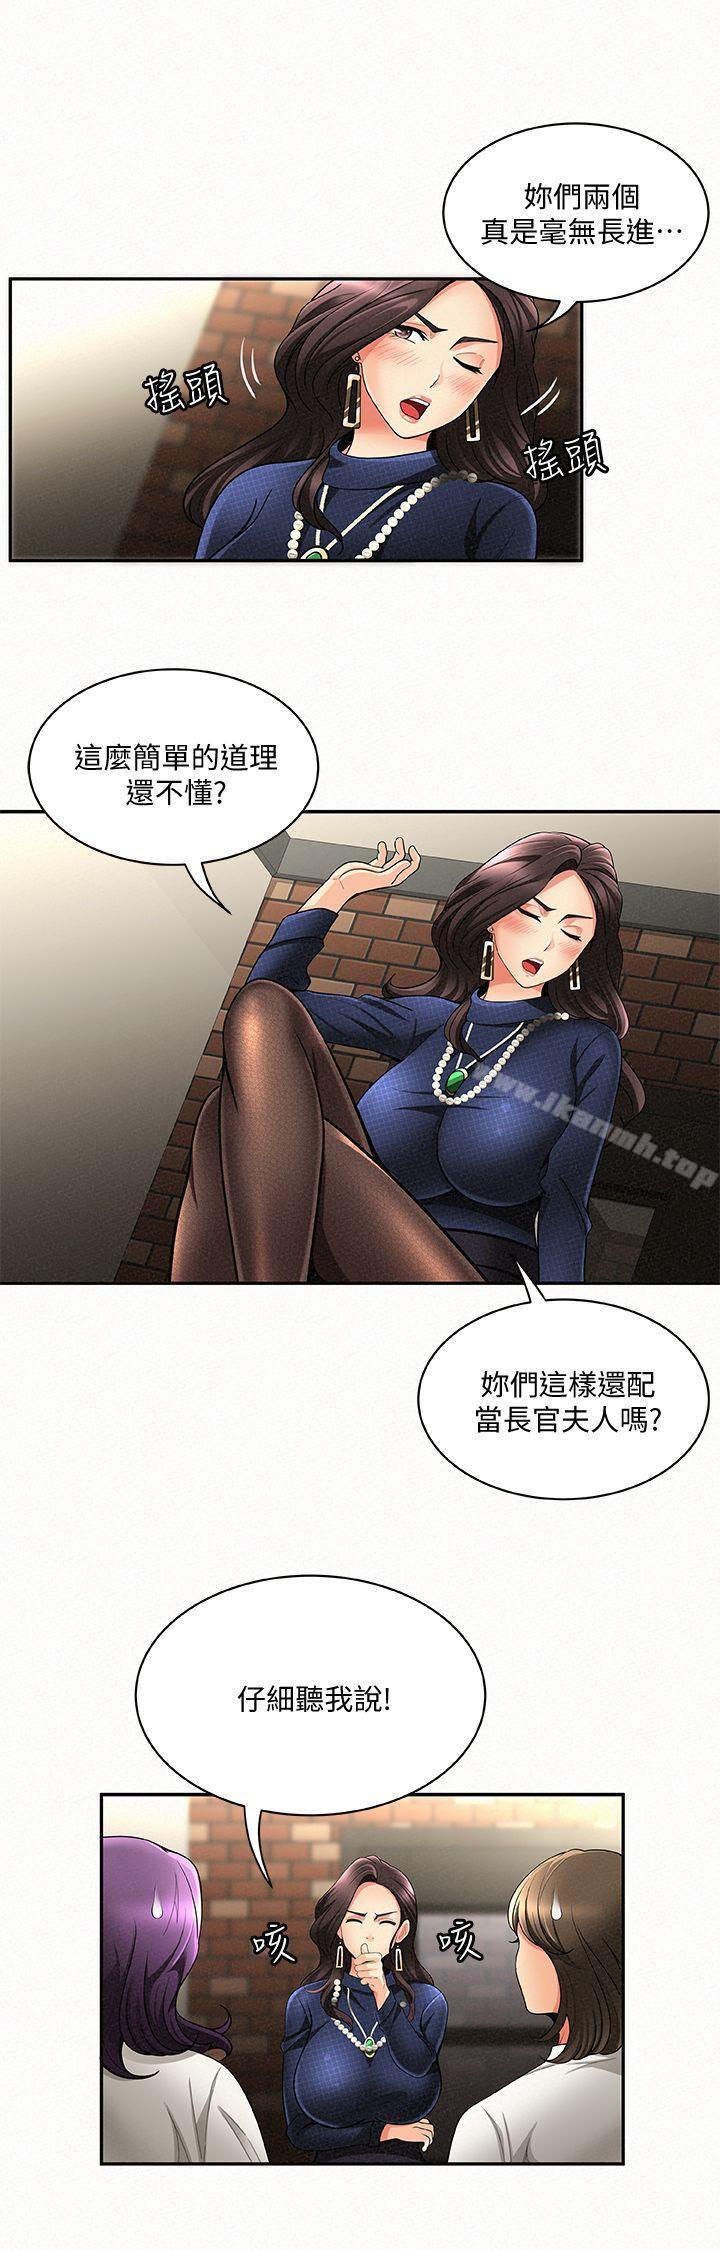 韩国漫画报告夫人韩漫_报告夫人-第3话-想不想尝尝其他有夫之妇?在线免费阅读-韩国漫画-第14张图片